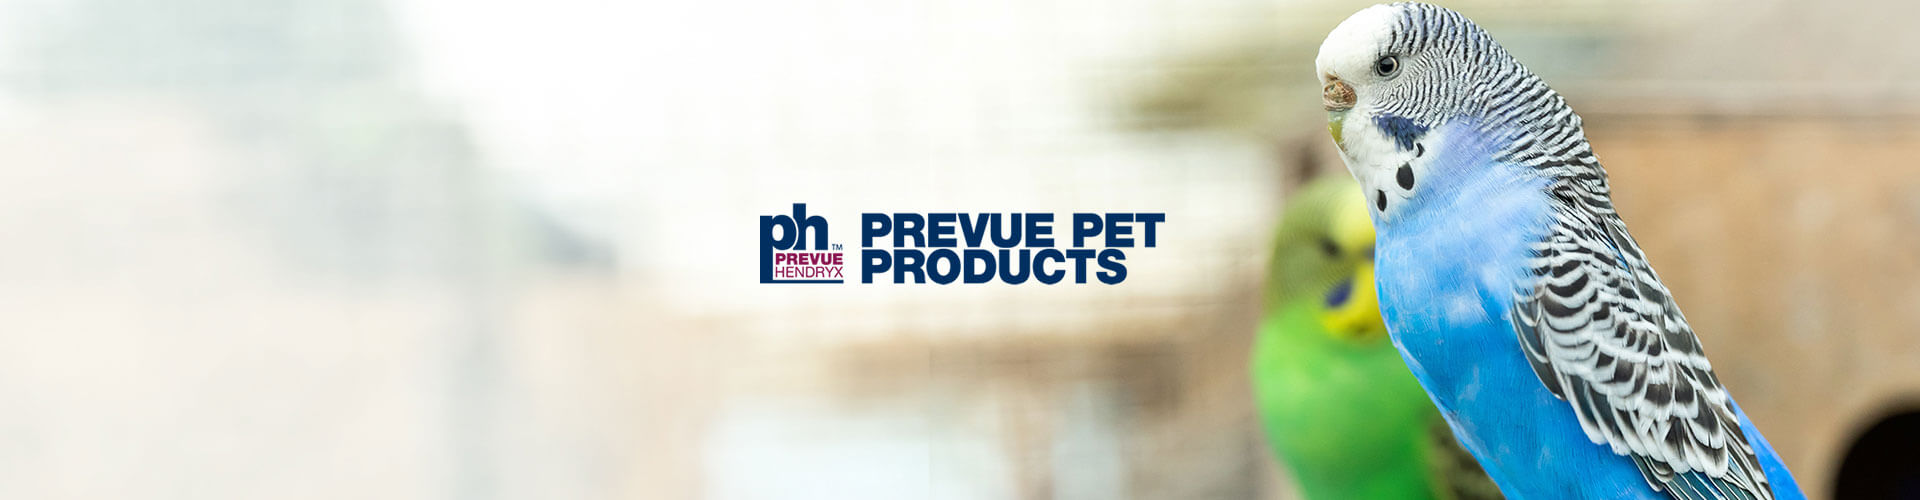 Case Study - Prevue Pet Products